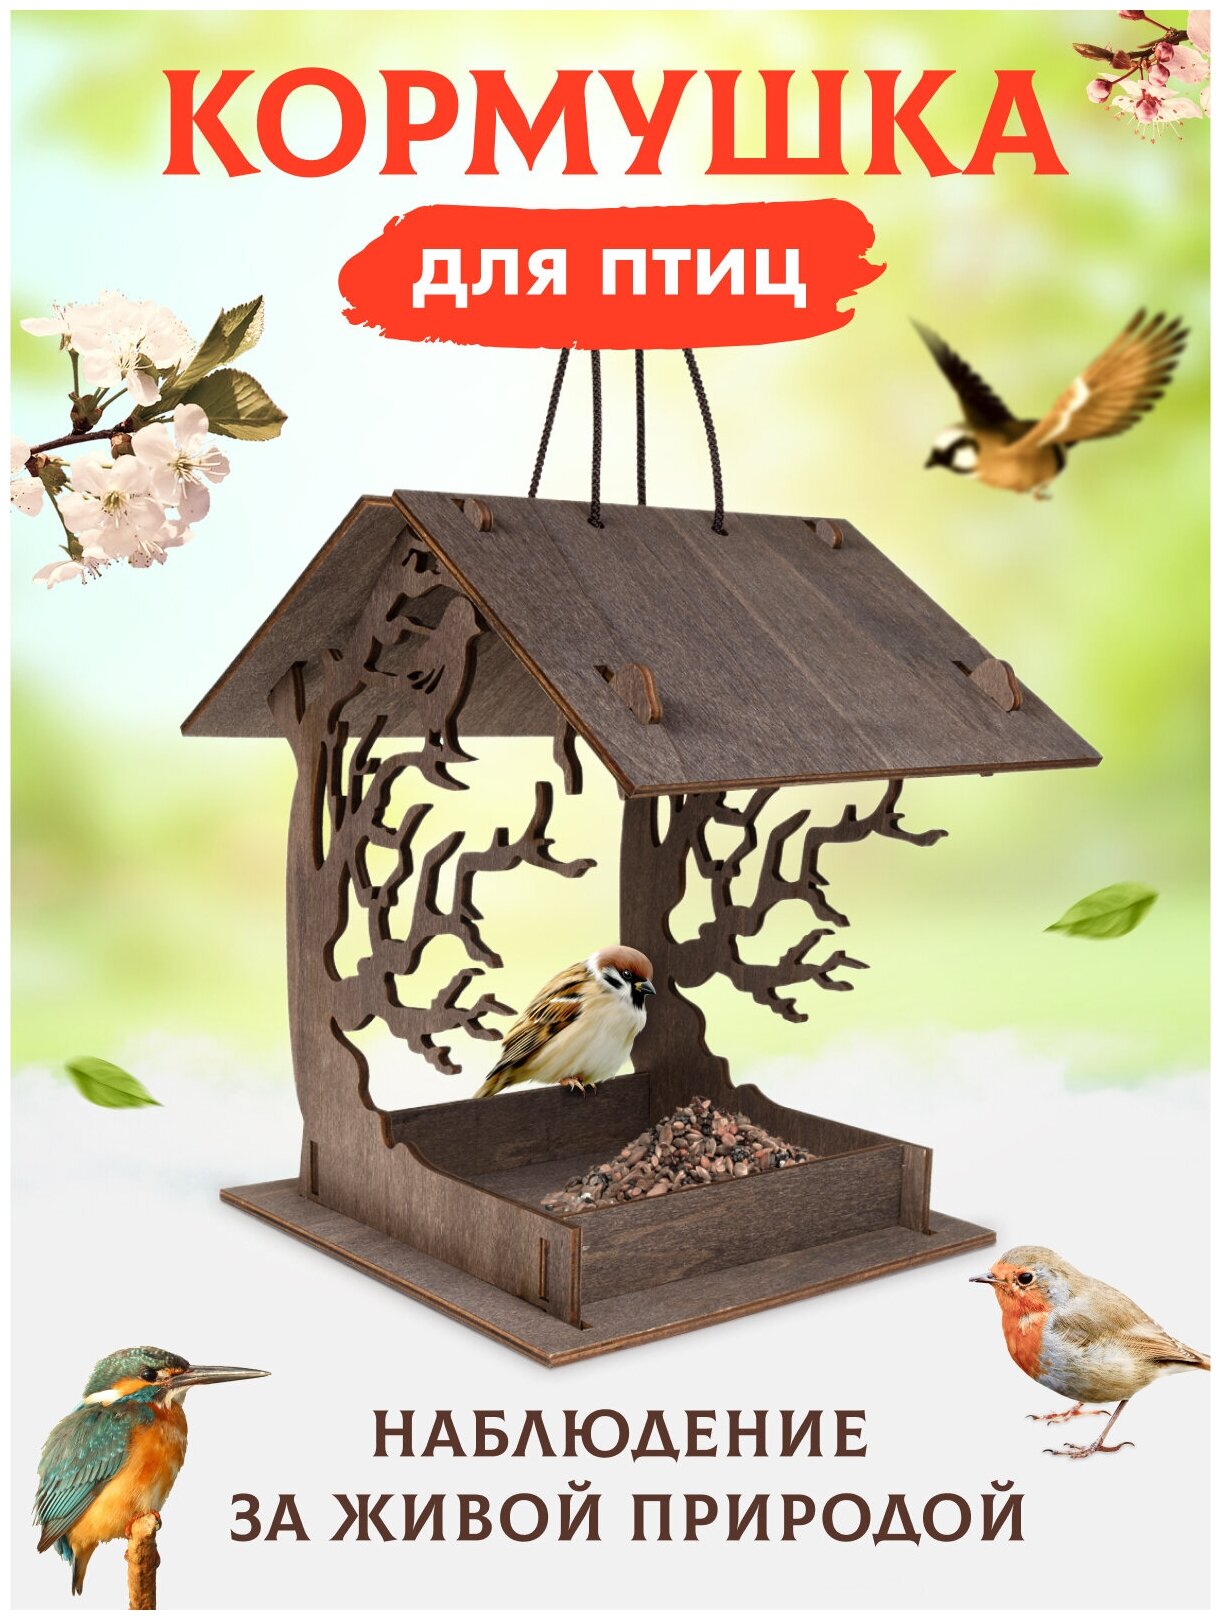 Кормушка / Скворечник из дерева домик для птиц и белок сборный конструктор из фанеры для детей